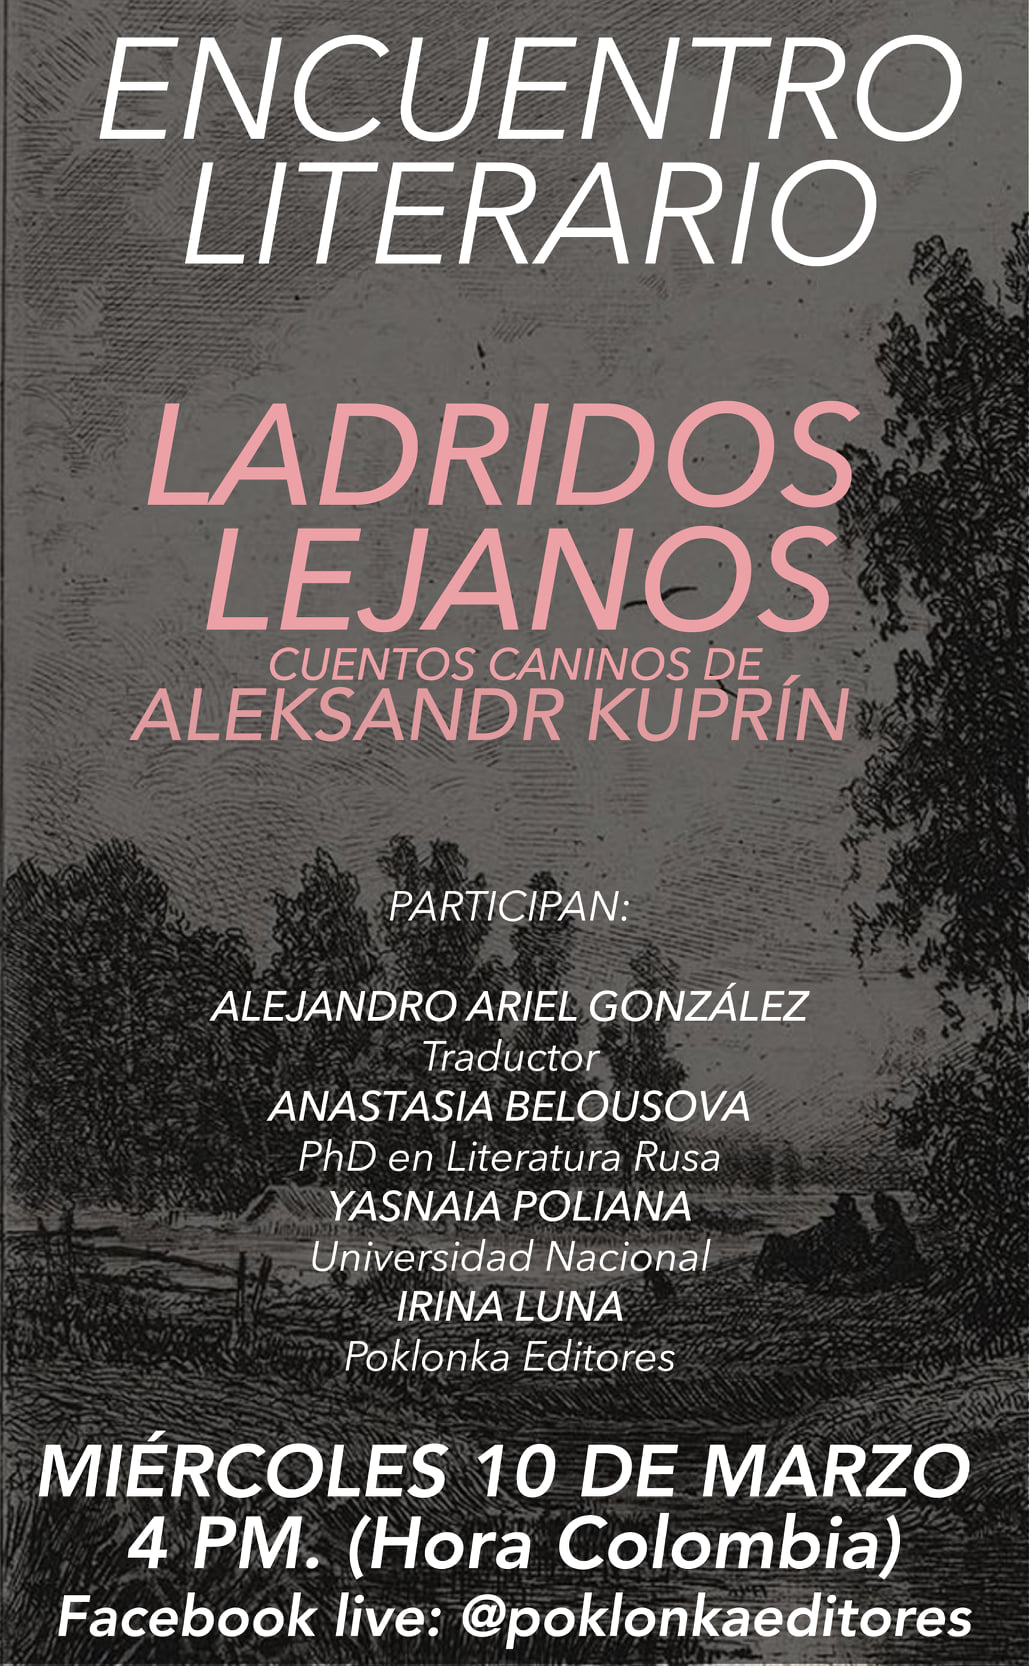 Encuentro literario: Ladridos lejanos, Aleksandr Kuprín